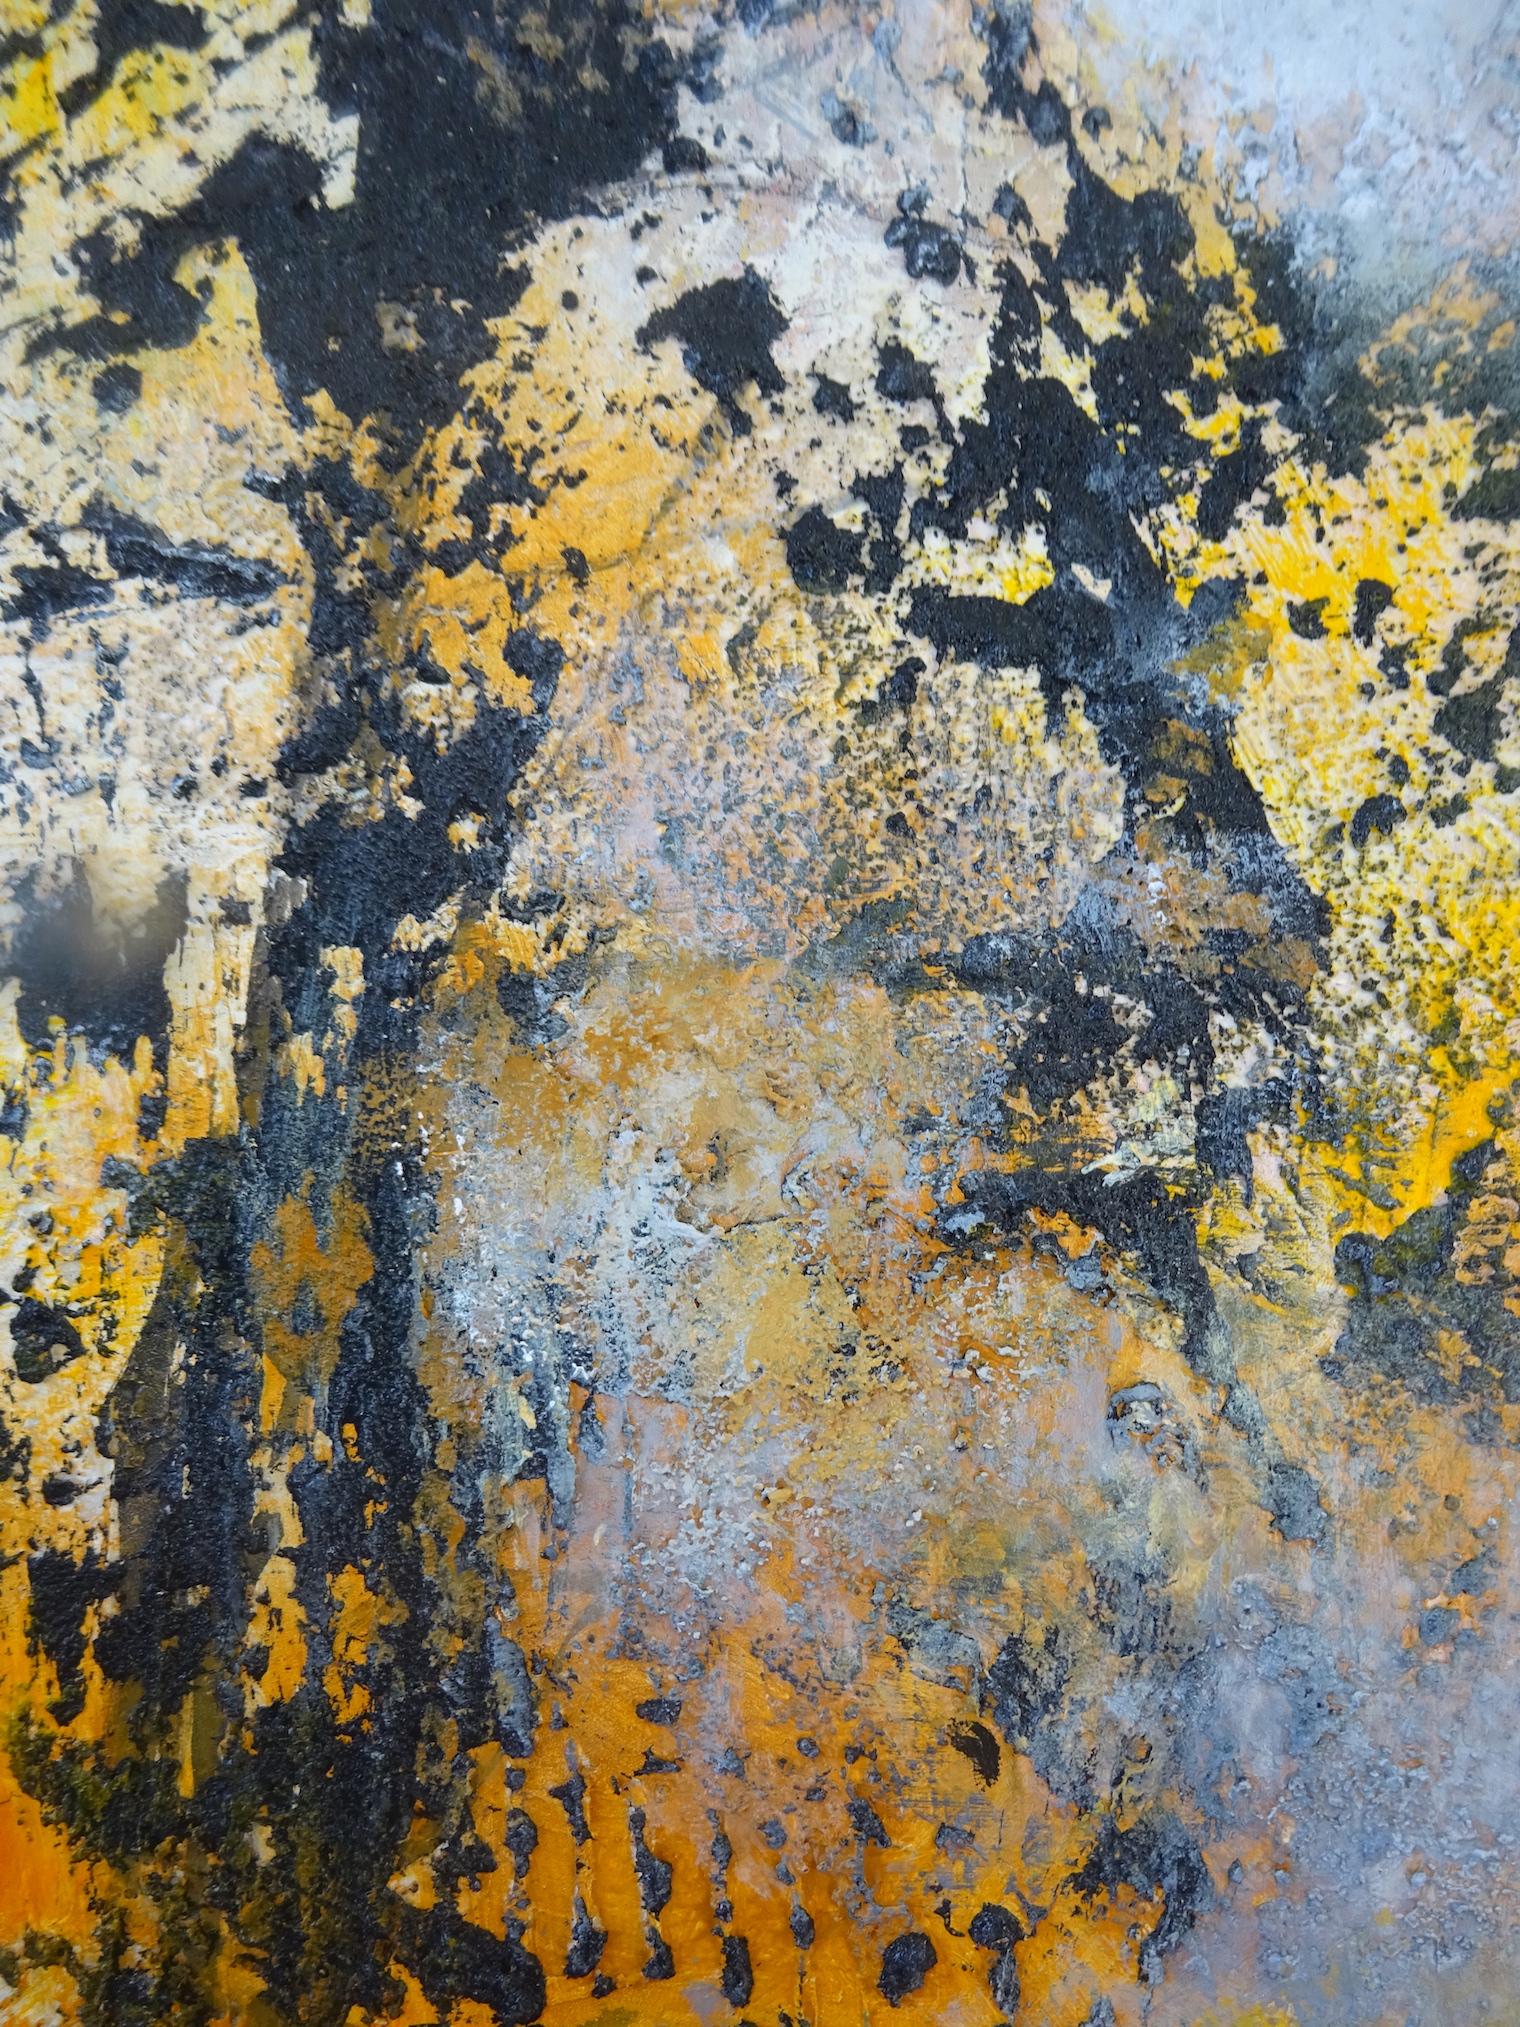 abstrakte Acryl Modellierpaste auf Leinwand Leinen ocker türkis Versand in Holzkiste zum Selbstkostenpreis
Glücklich sein,  leichtigkeit von Gelb, ein Moment der Freude
die beziehung der farben und die bewegung der algen in der transparenz ist der